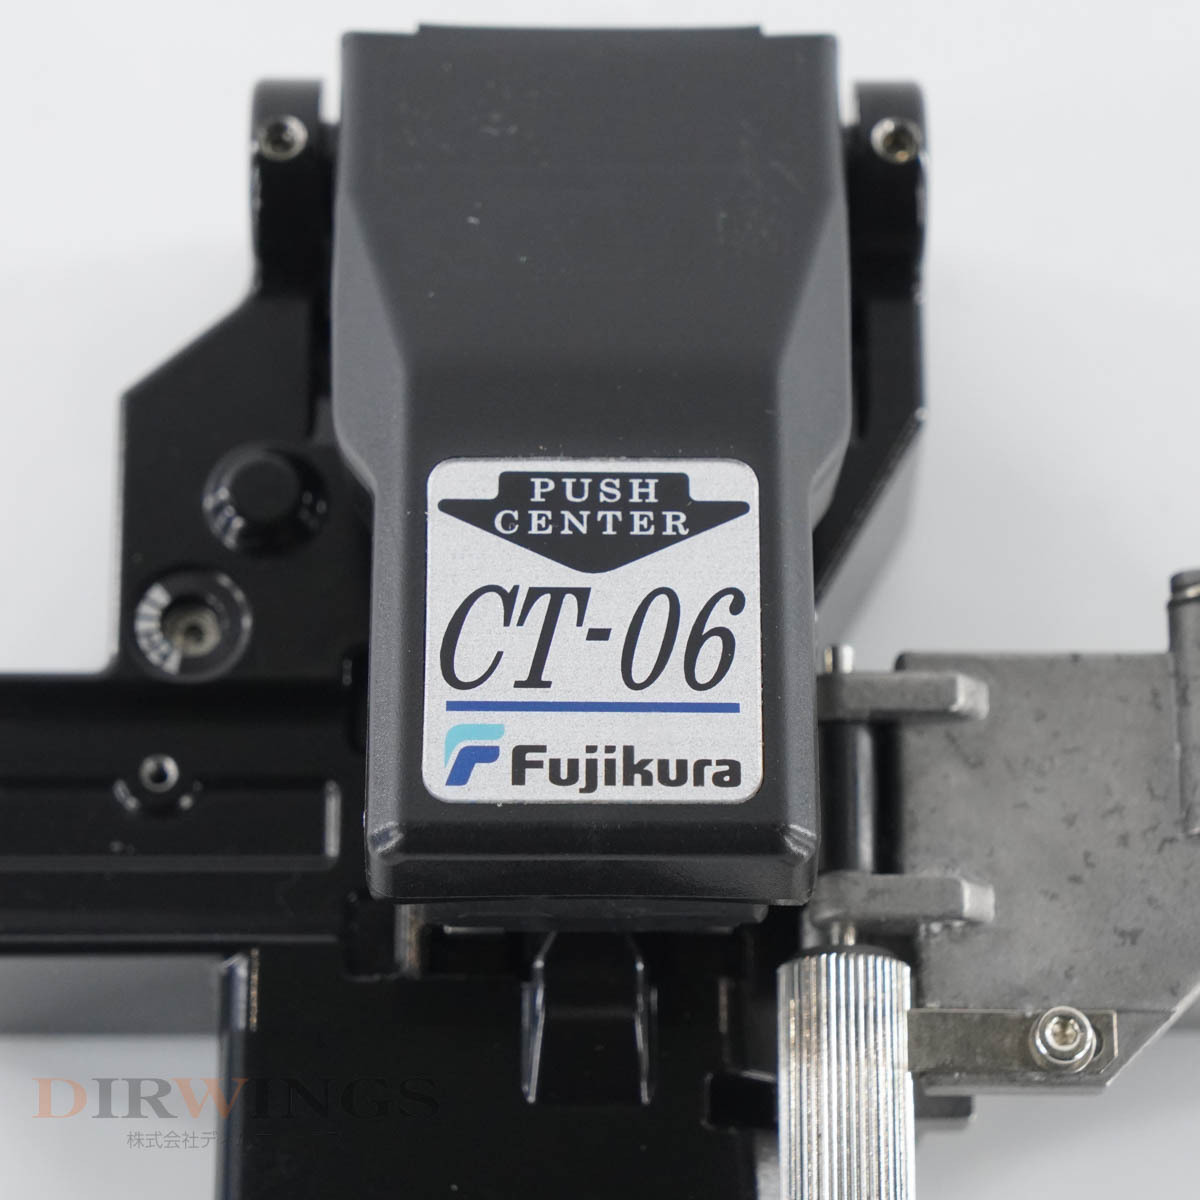 [DW] 8 day guarantee CT-06 Fujikura fujikura light fibre heart line contrast vessel light fiber kata light fai bar cutter [05709-0370]